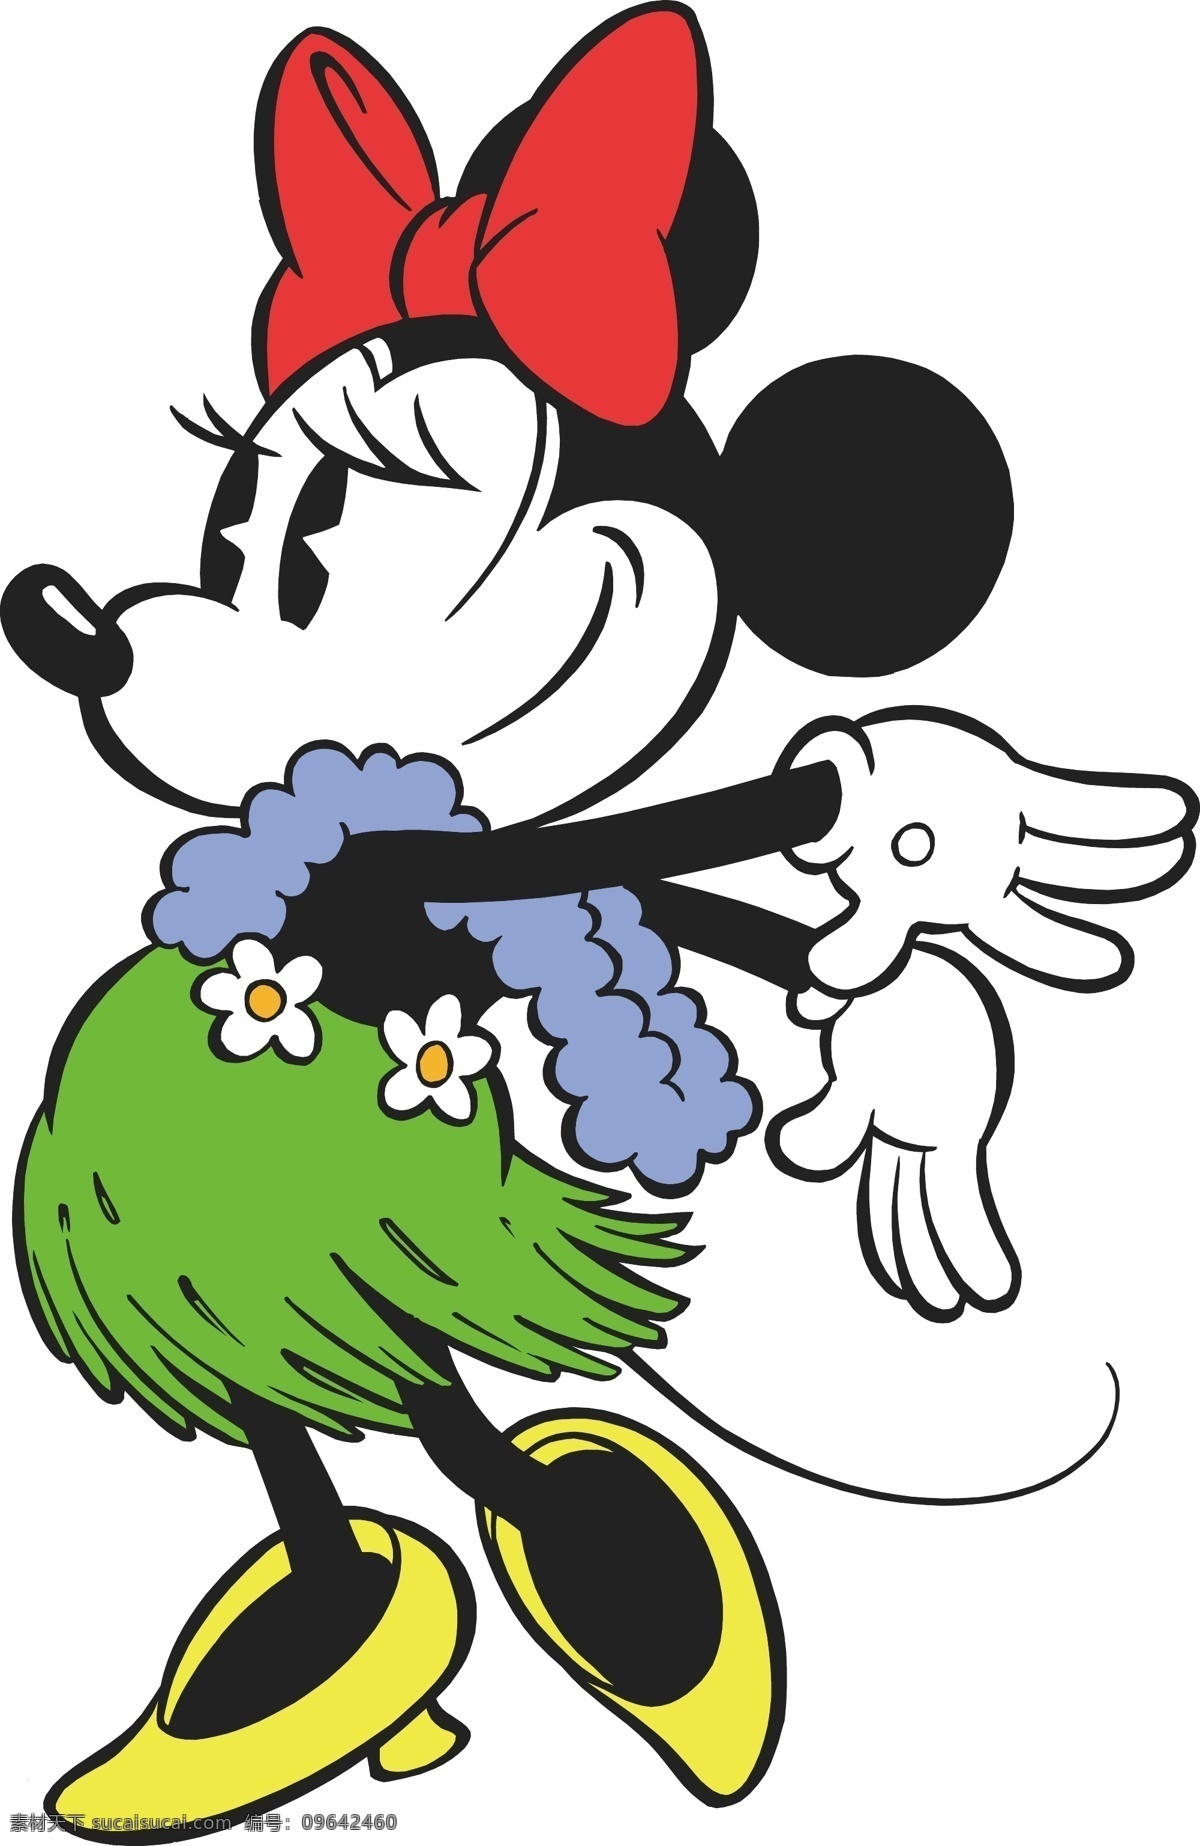 印花 矢量图 迪士尼 服装图案 米老鼠 米奇 印花矢量图 面料图库 服装设计 图案花型